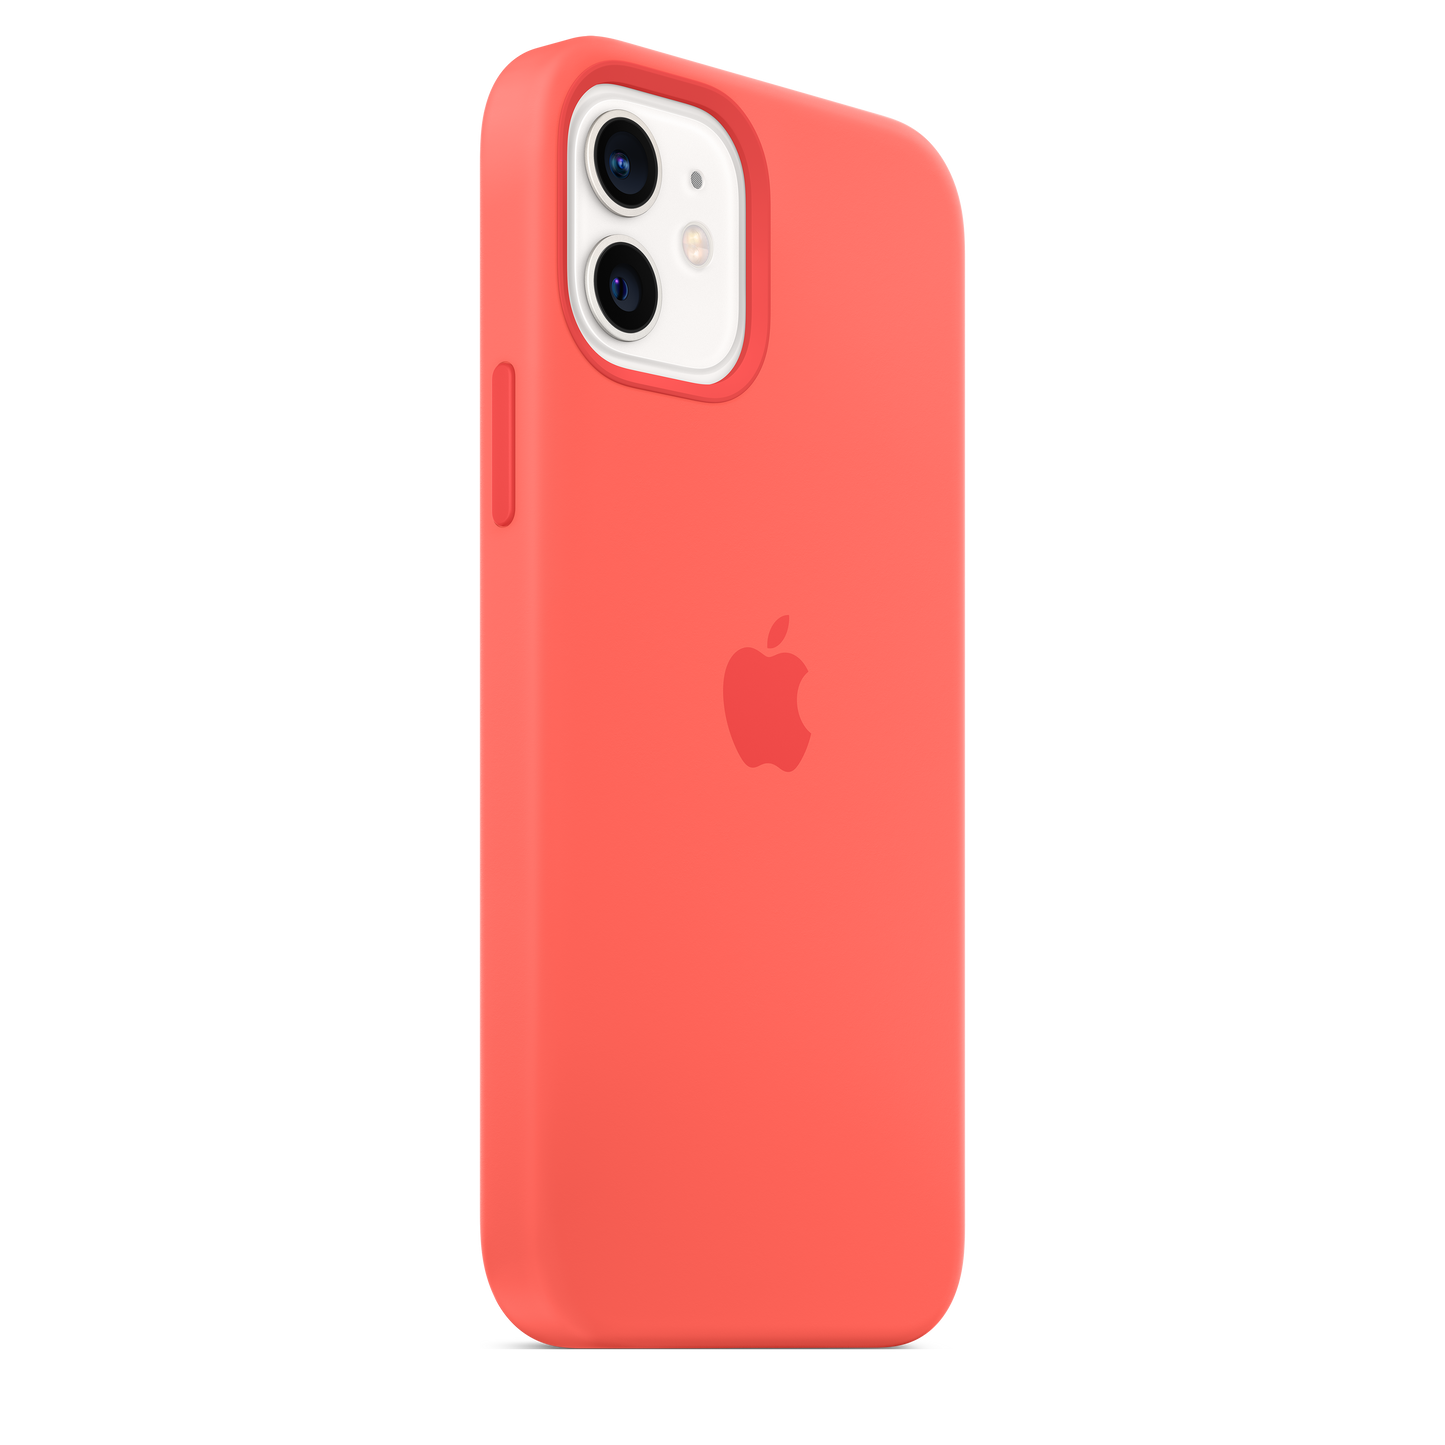 Funda de silicona con MagSafe para el iPhone 12 y iPhone 12 Pro, Pomelo rosa - Rossellimac